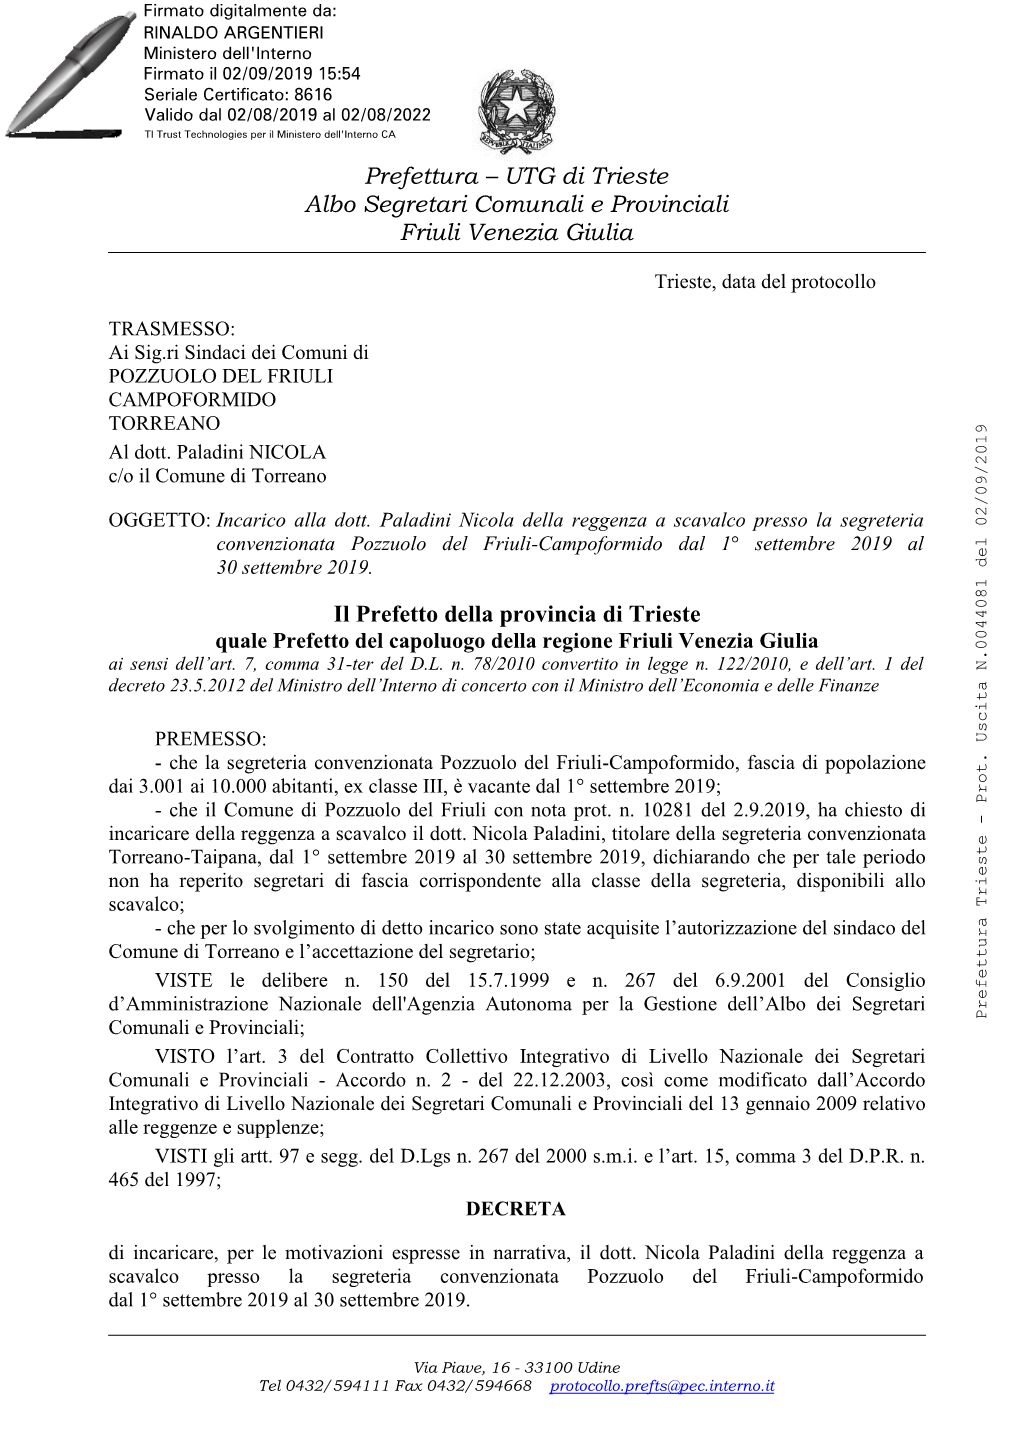 UTG Di Trieste Albo Segretari Comunali E Provinciali Friuli Venezia Giulia